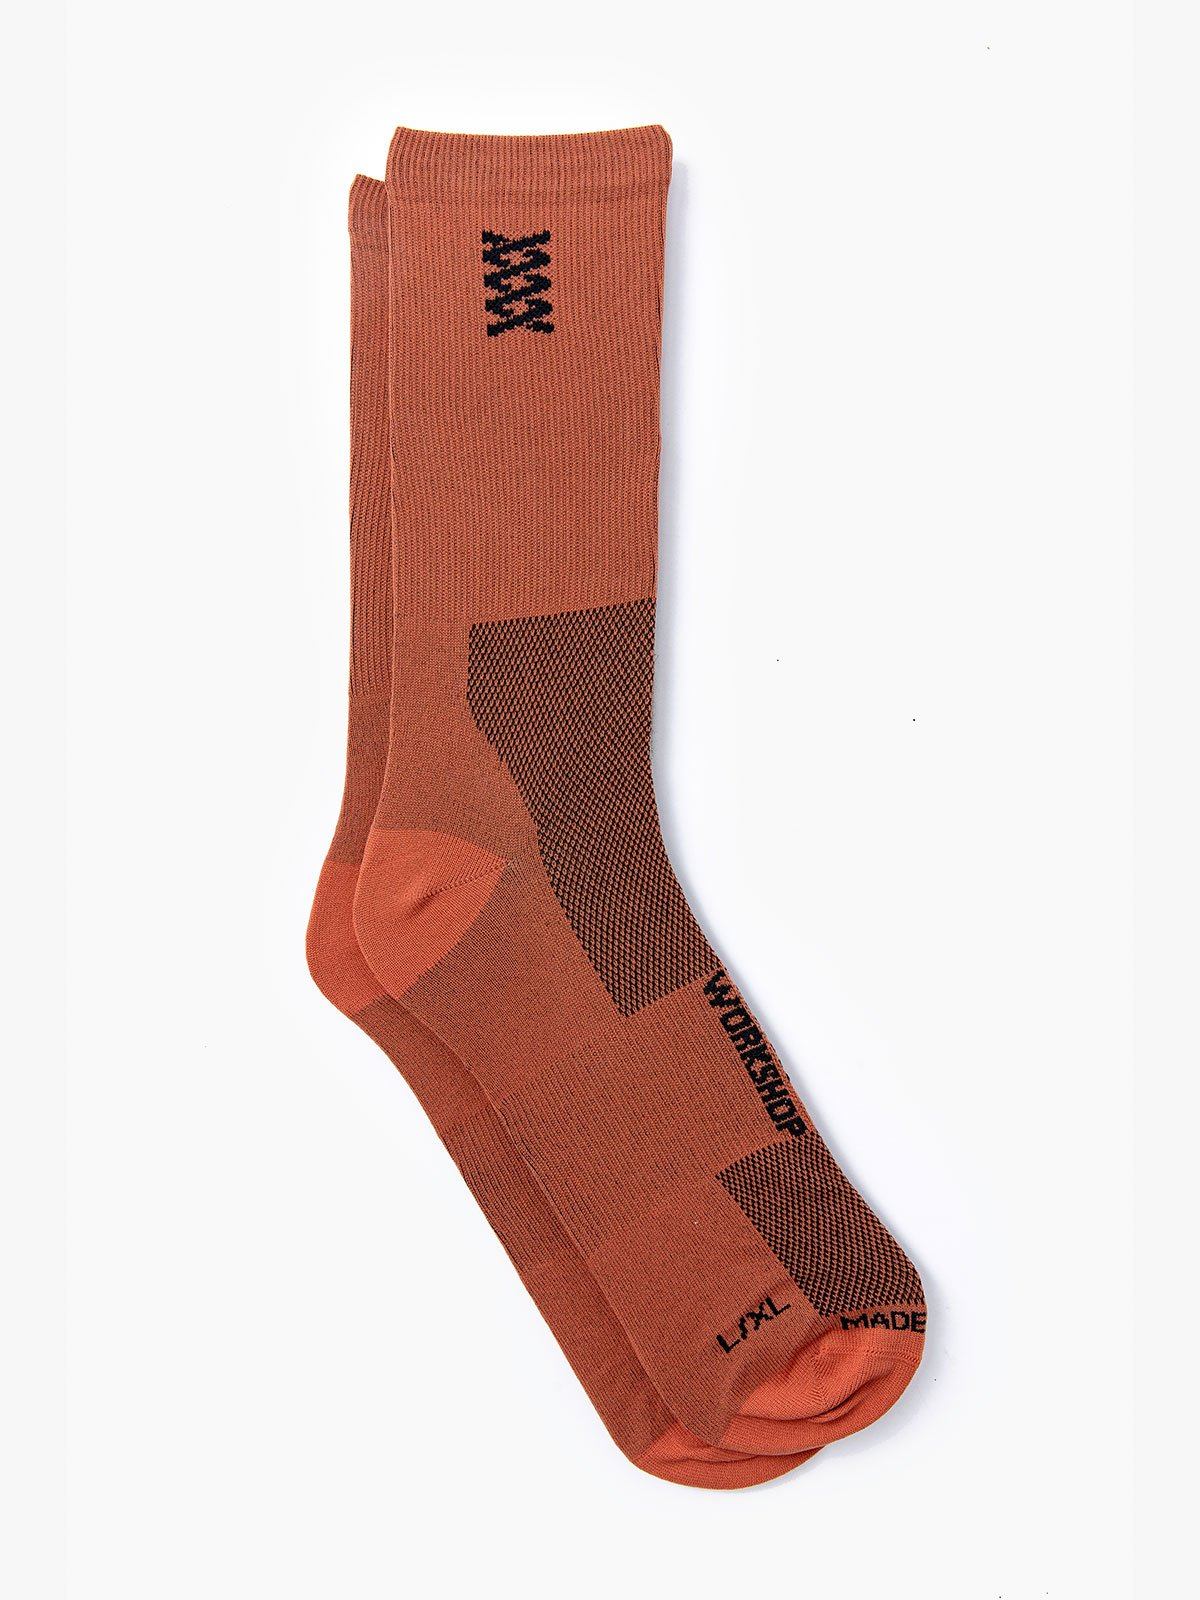 Mission Pro Socks by Mission Workshop - Bolsas resistentes a la intemperie y ropa técnica - San Francisco y Los Ángeles - Fabricados para durar - Garantizados para siempre